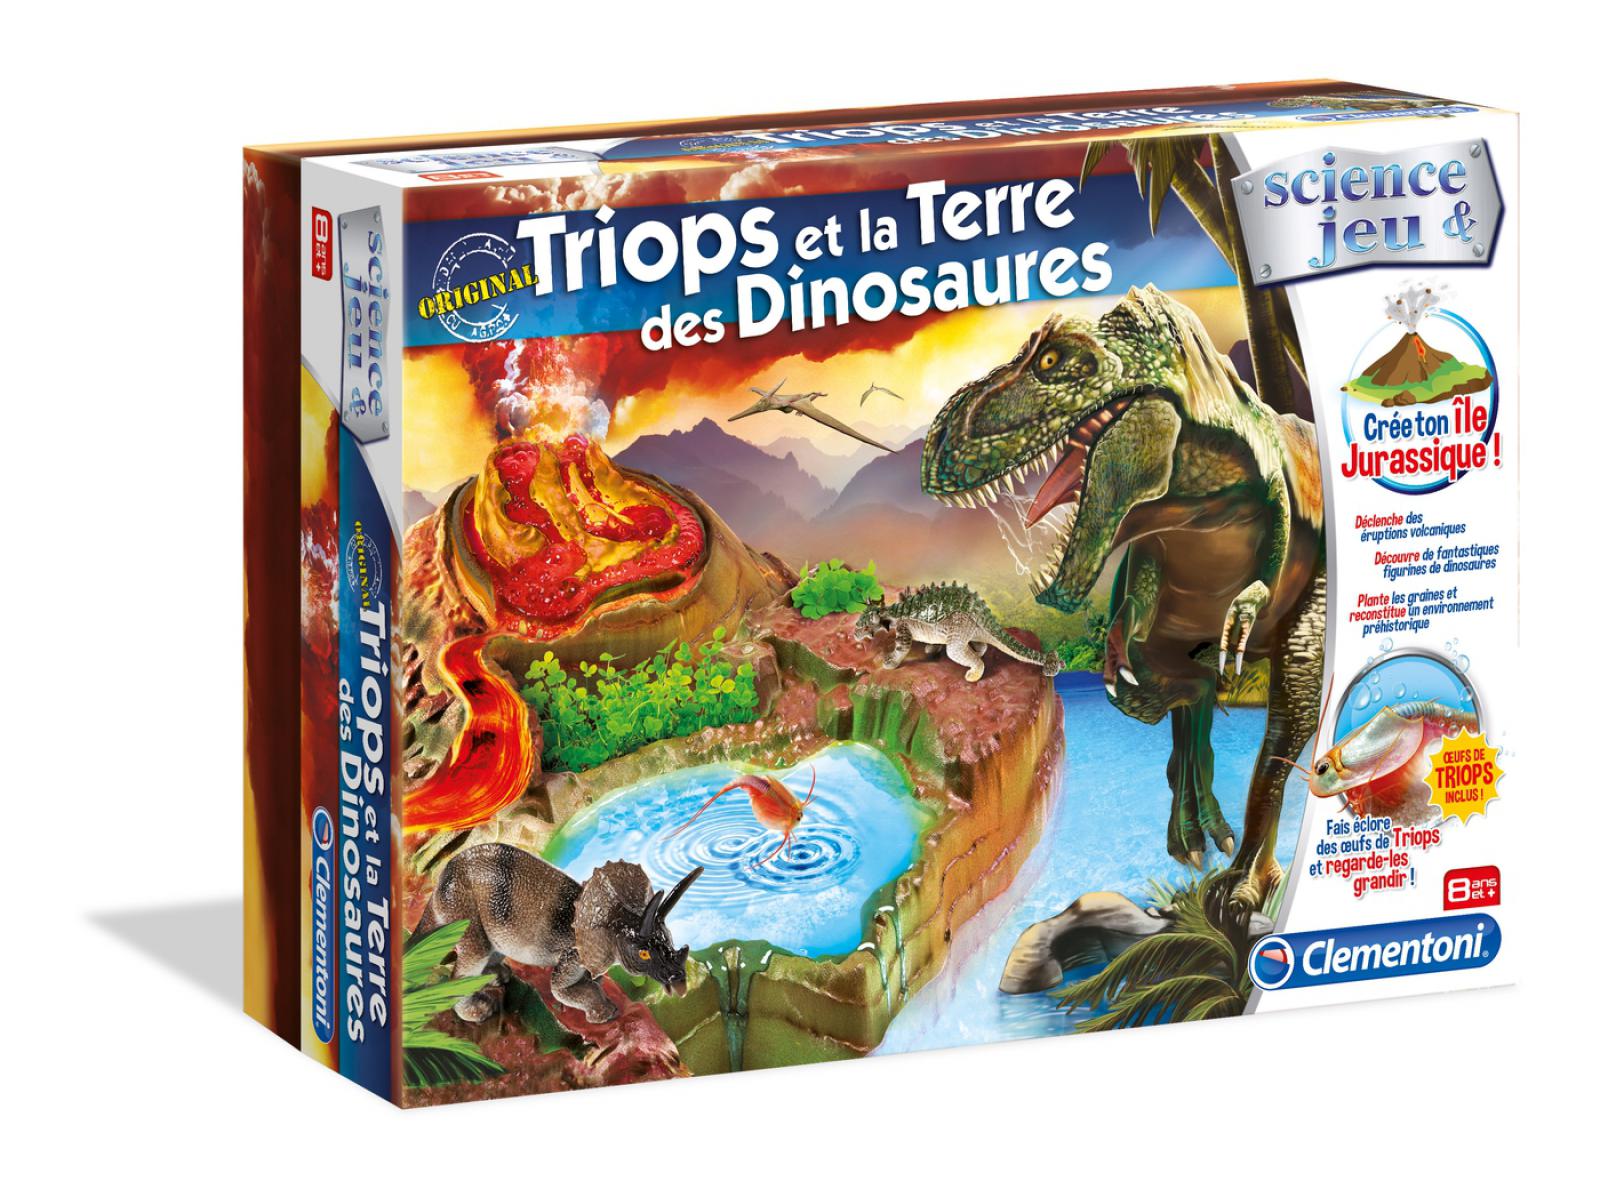 Clementoni Triops et la Terre des Dinosaures Jeu Éducatif et Scientifique 62386.0 